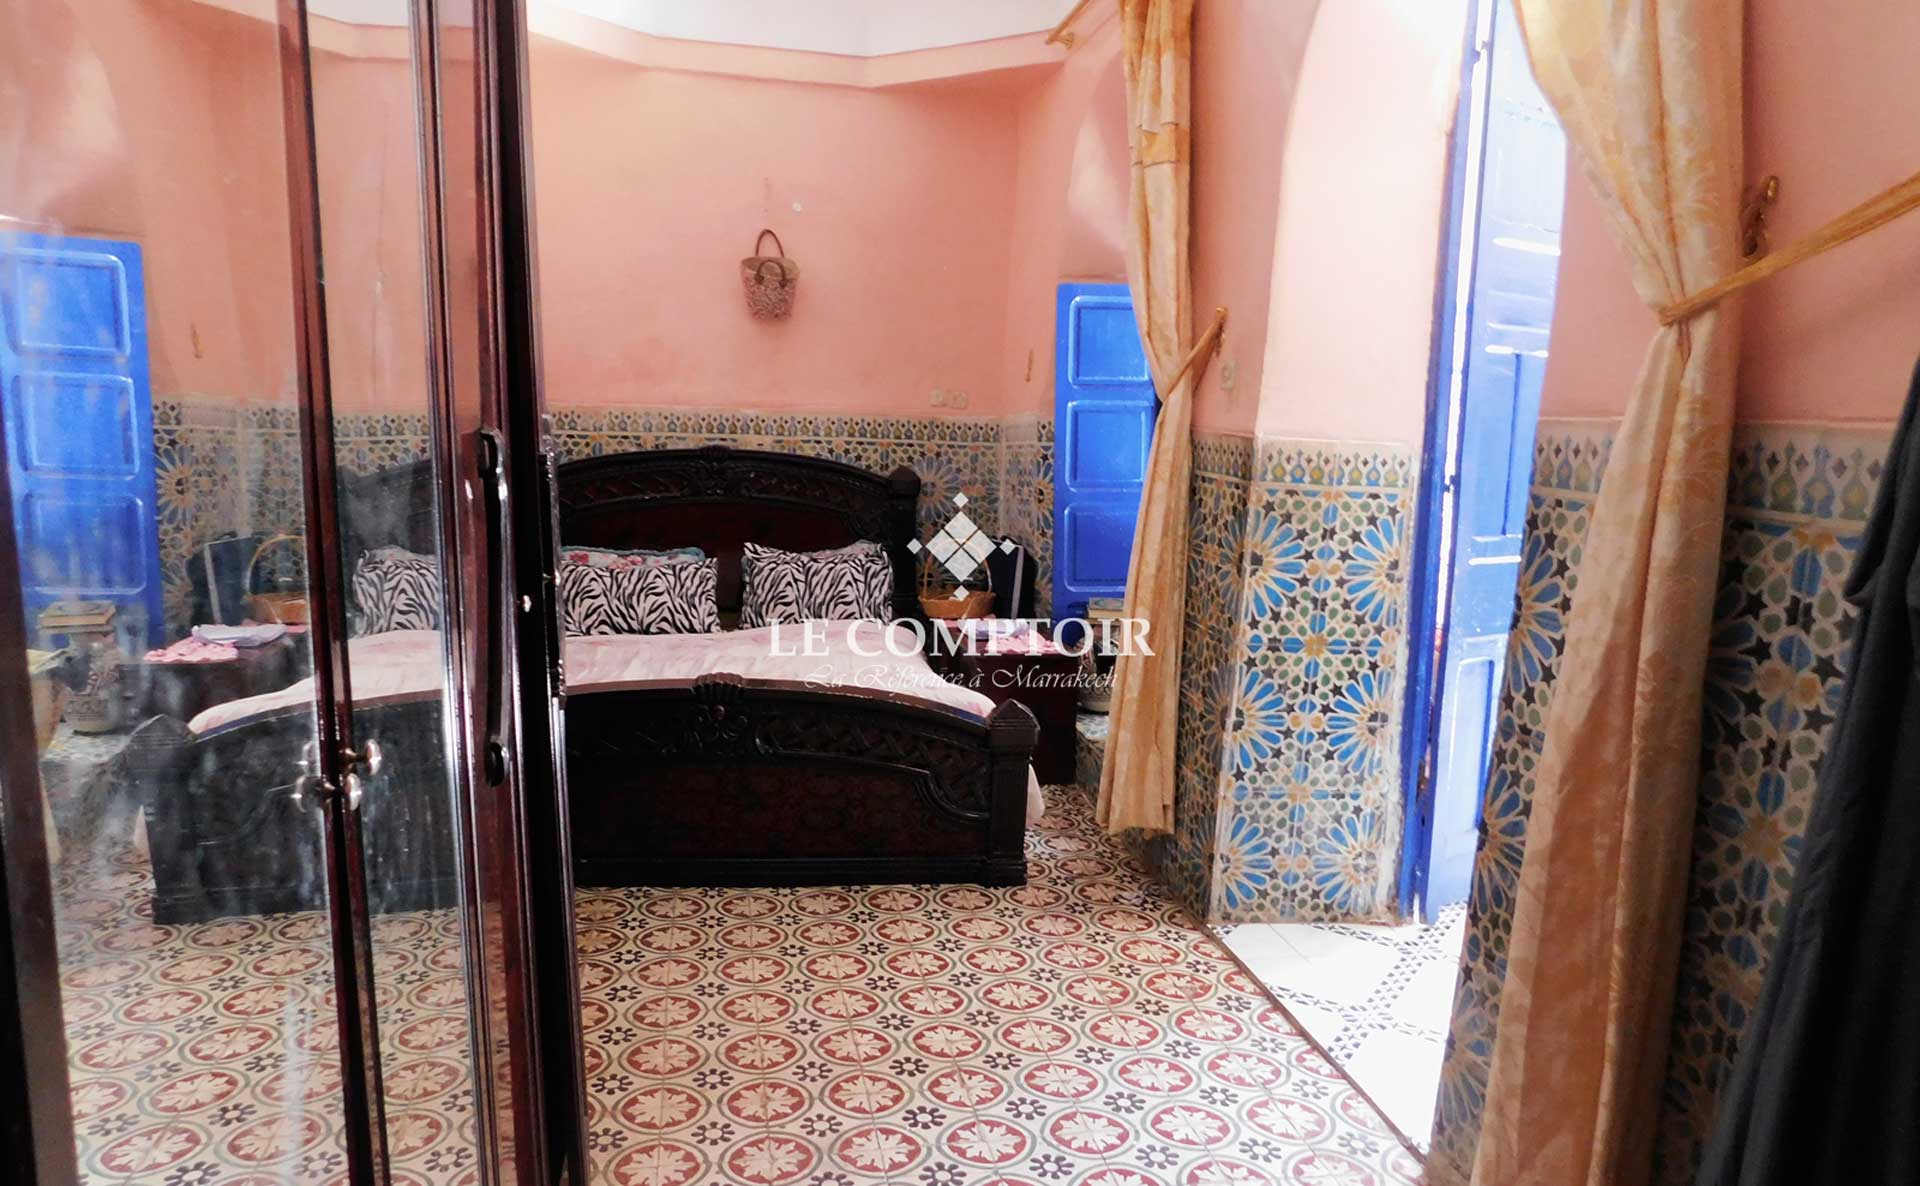 Le Comptoir Immobilier Agence Immobiliere Marrakech Vente Riad A Renover Ben Saleh Marrakech 2